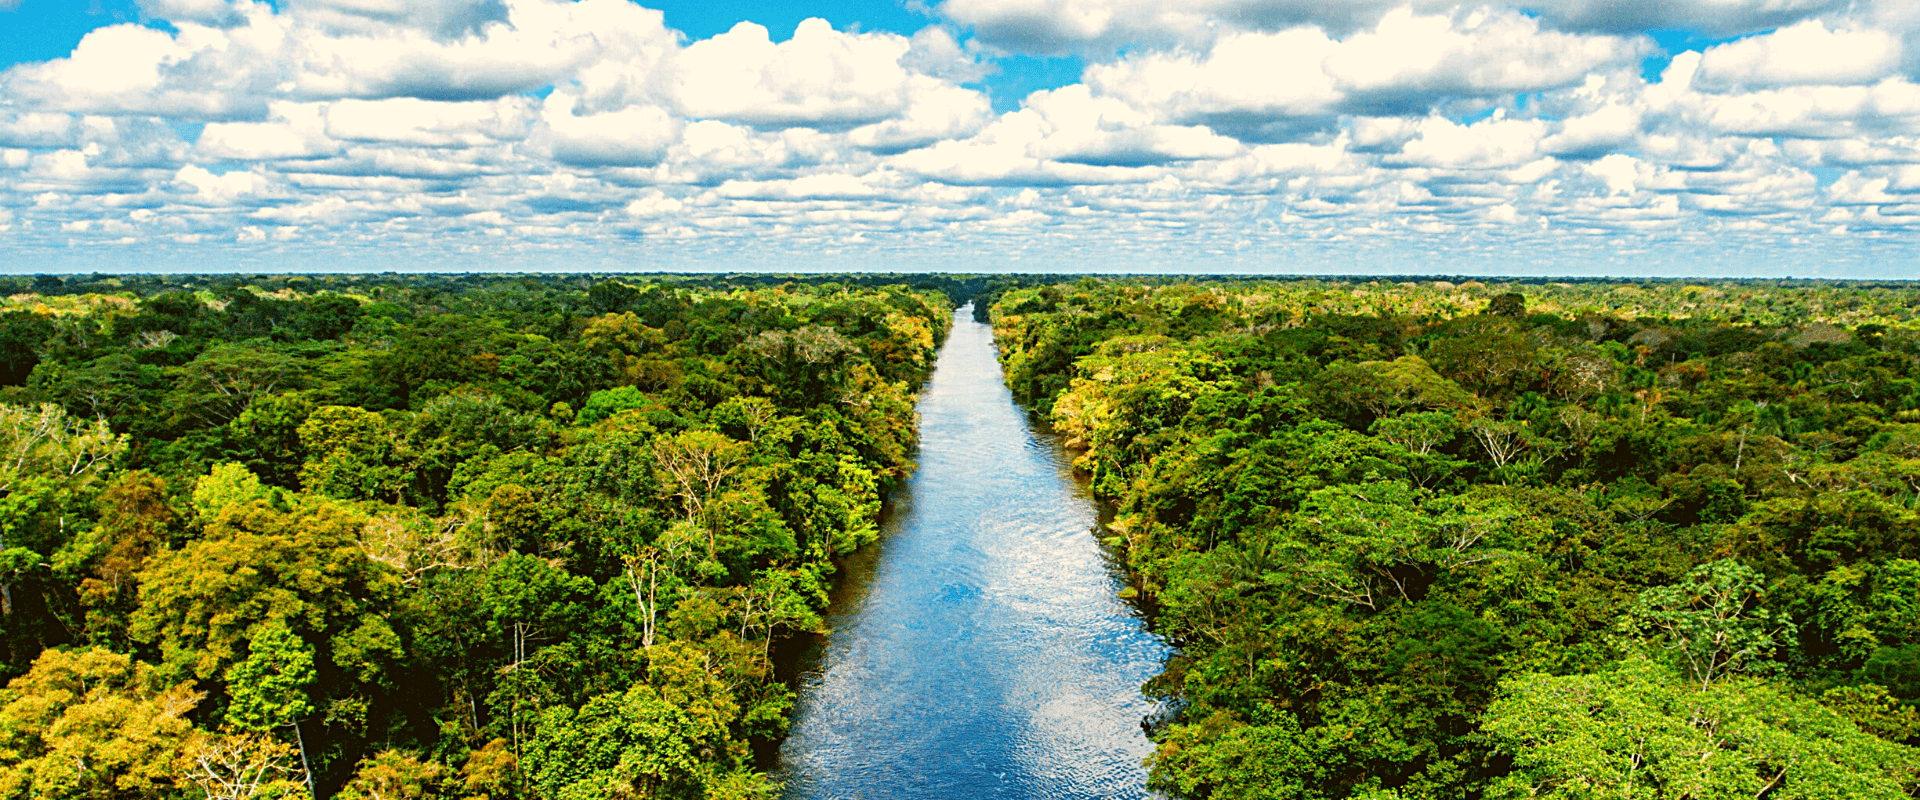 Amazonia River Cruise Tour